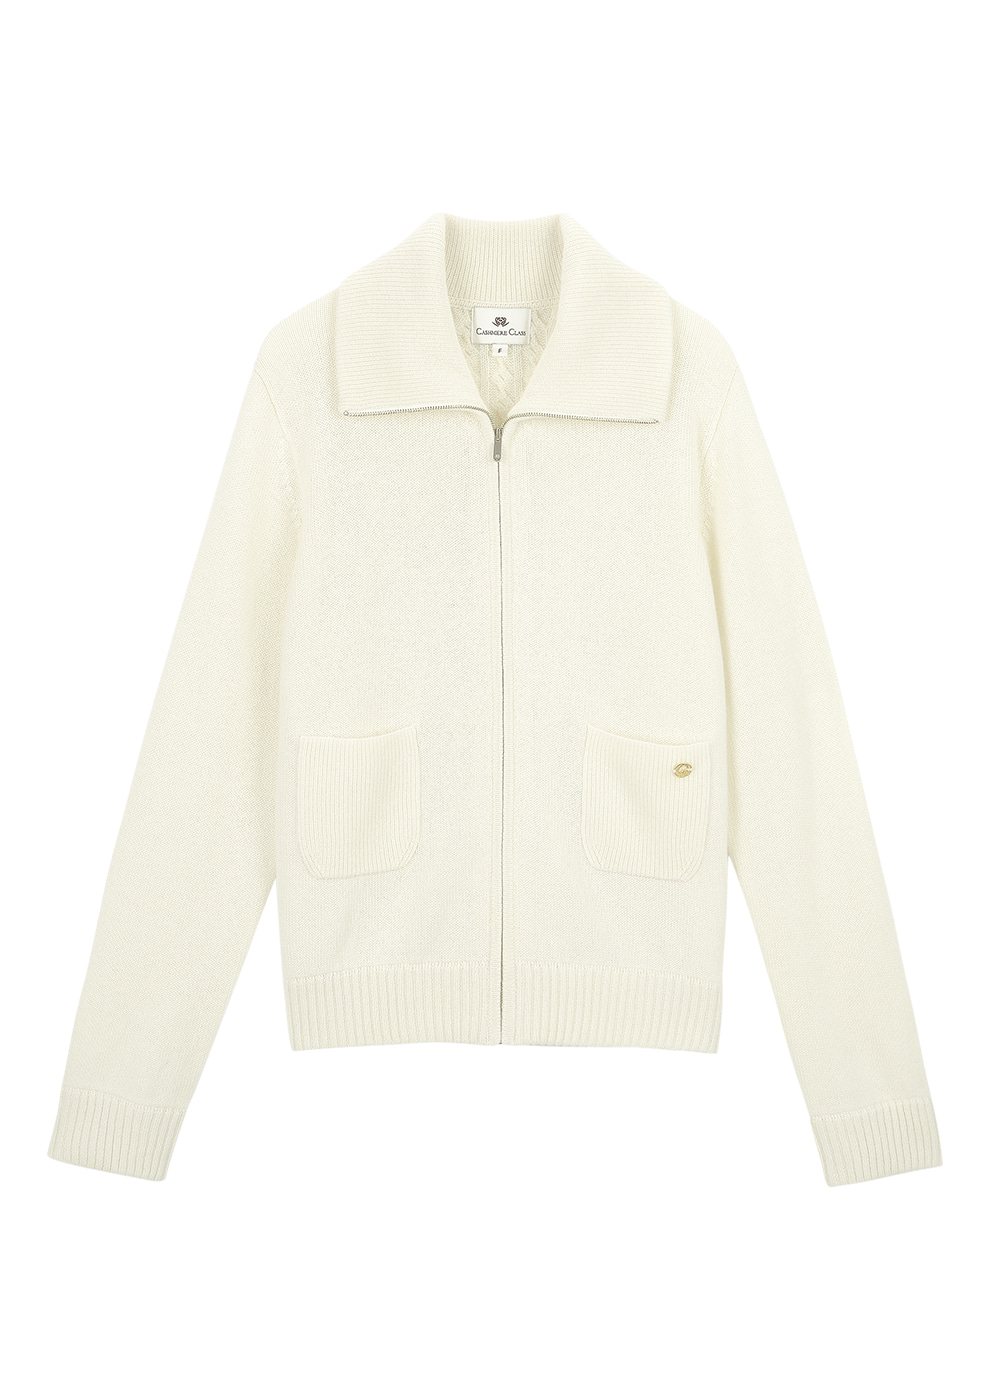 Collar Zip-up jacket  (cream) 20%